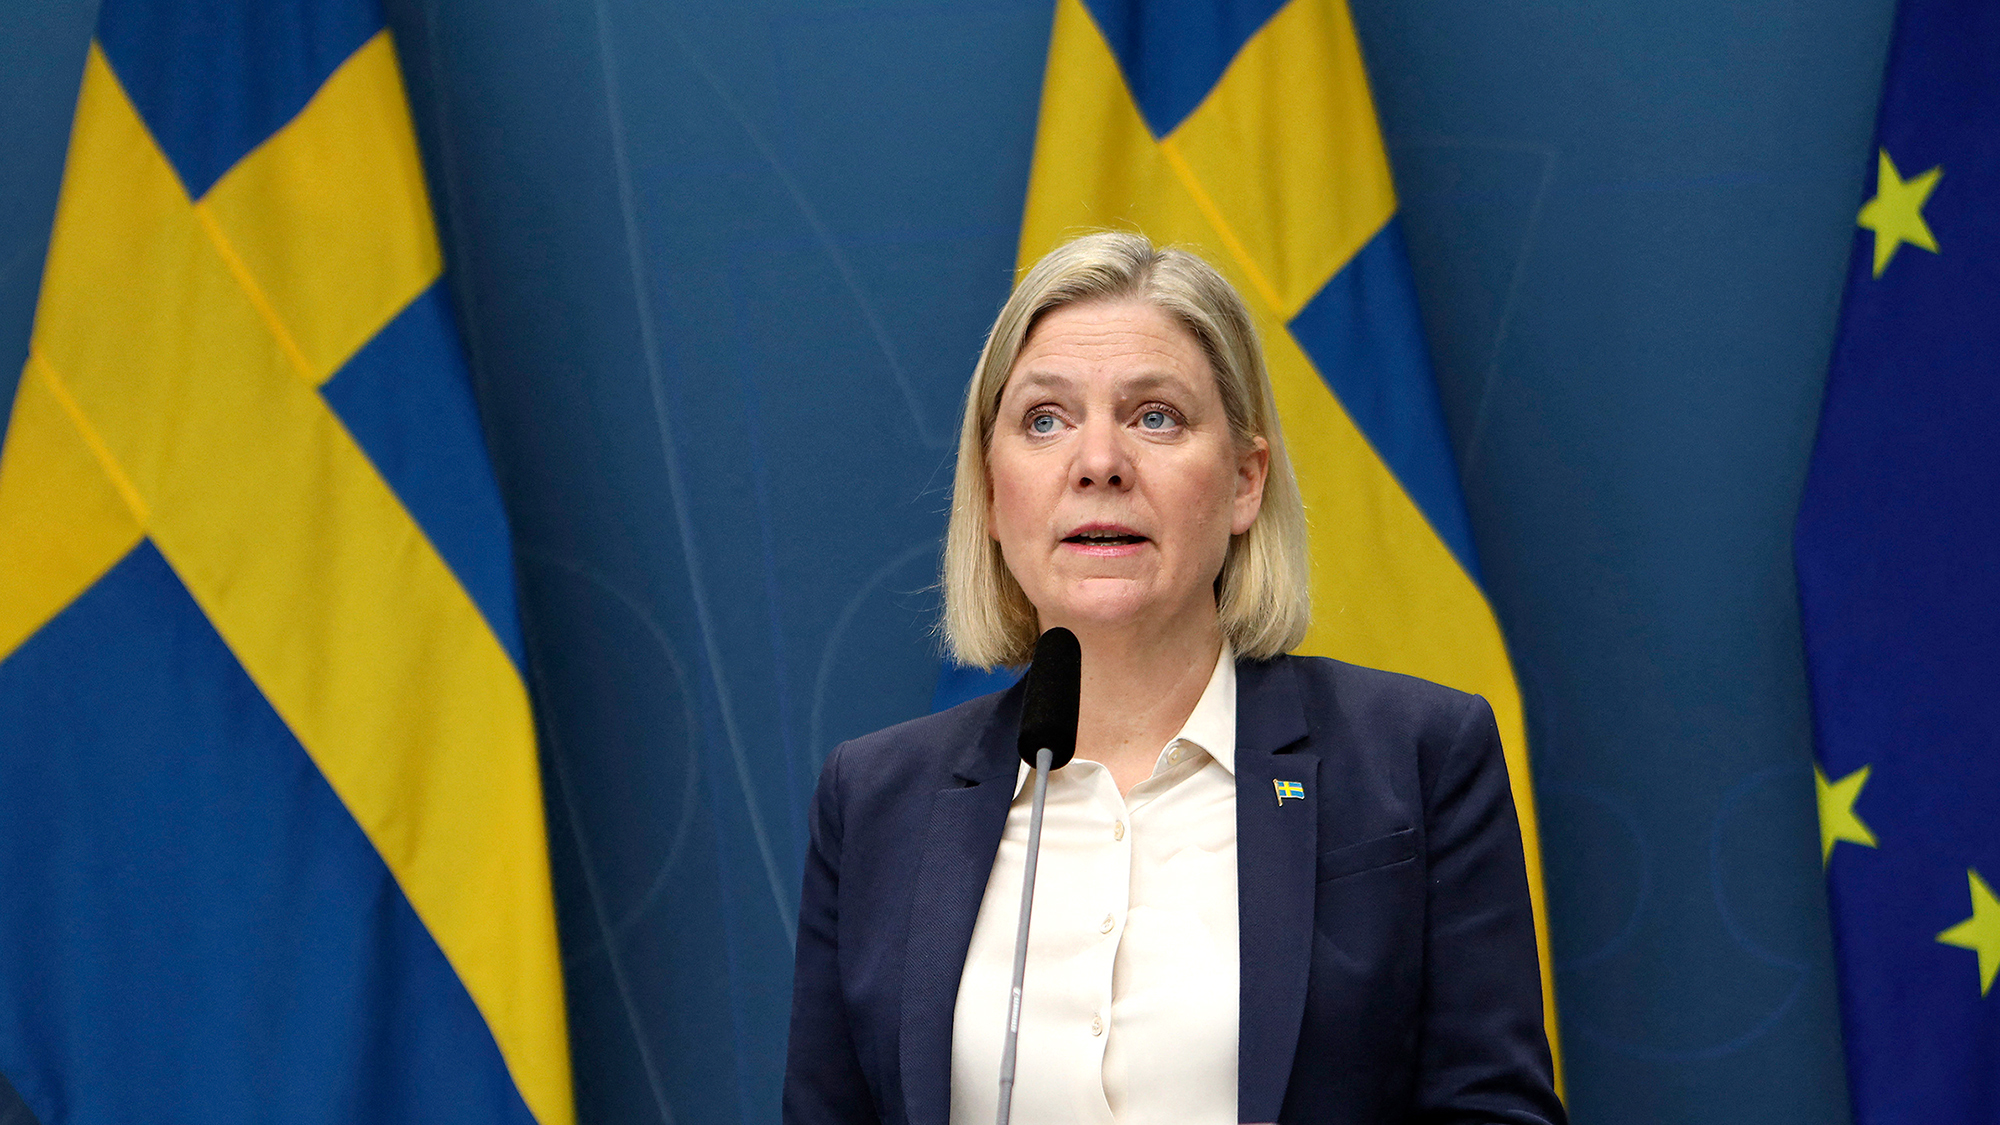 İsveç Başbakanı Magdalena Andersson, 27 Şubat'ta İsveç'in başkenti Stockholm'de bir basın toplantısı düzenleyecek.